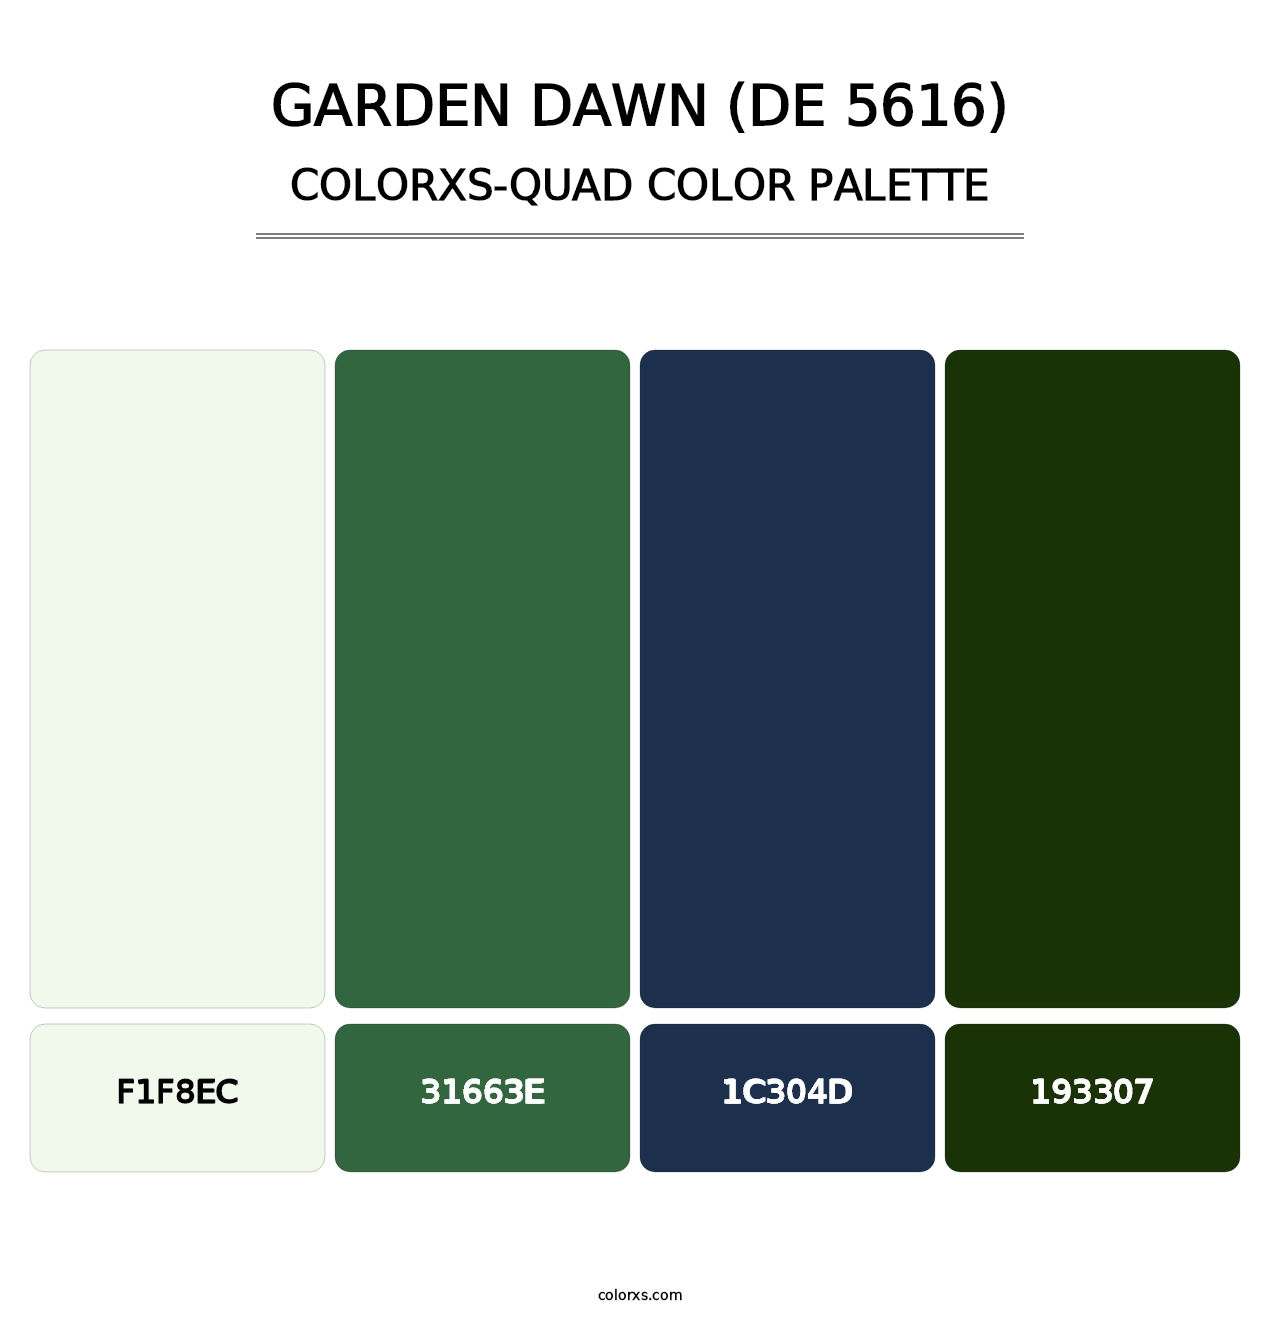 Garden Dawn (DE 5616) - Colorxs Quad Palette